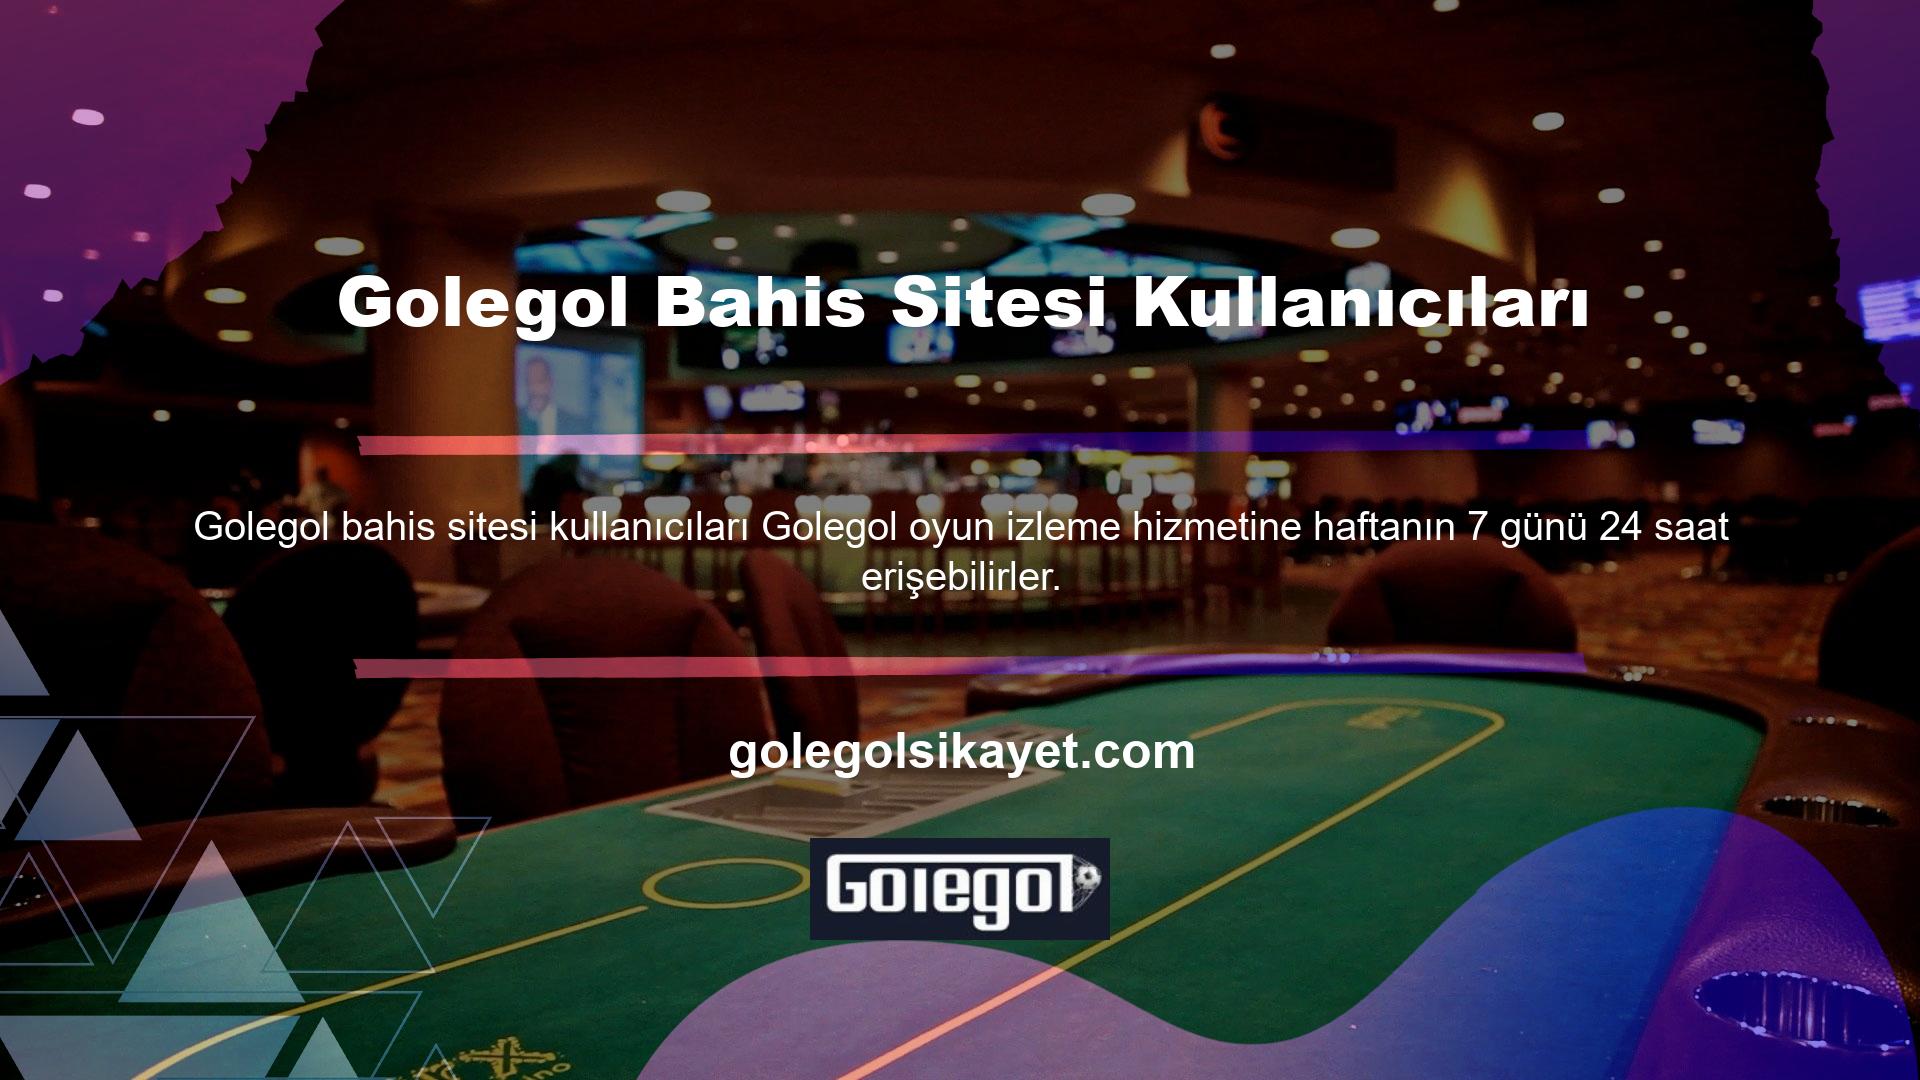 Yan oyun hizmetleri alanında oldukça tecrübeli olan Golegol, spor müsabakaları ve casino oyunları gibi canlı yayın hizmetlerini de sunmaya devam ediyor